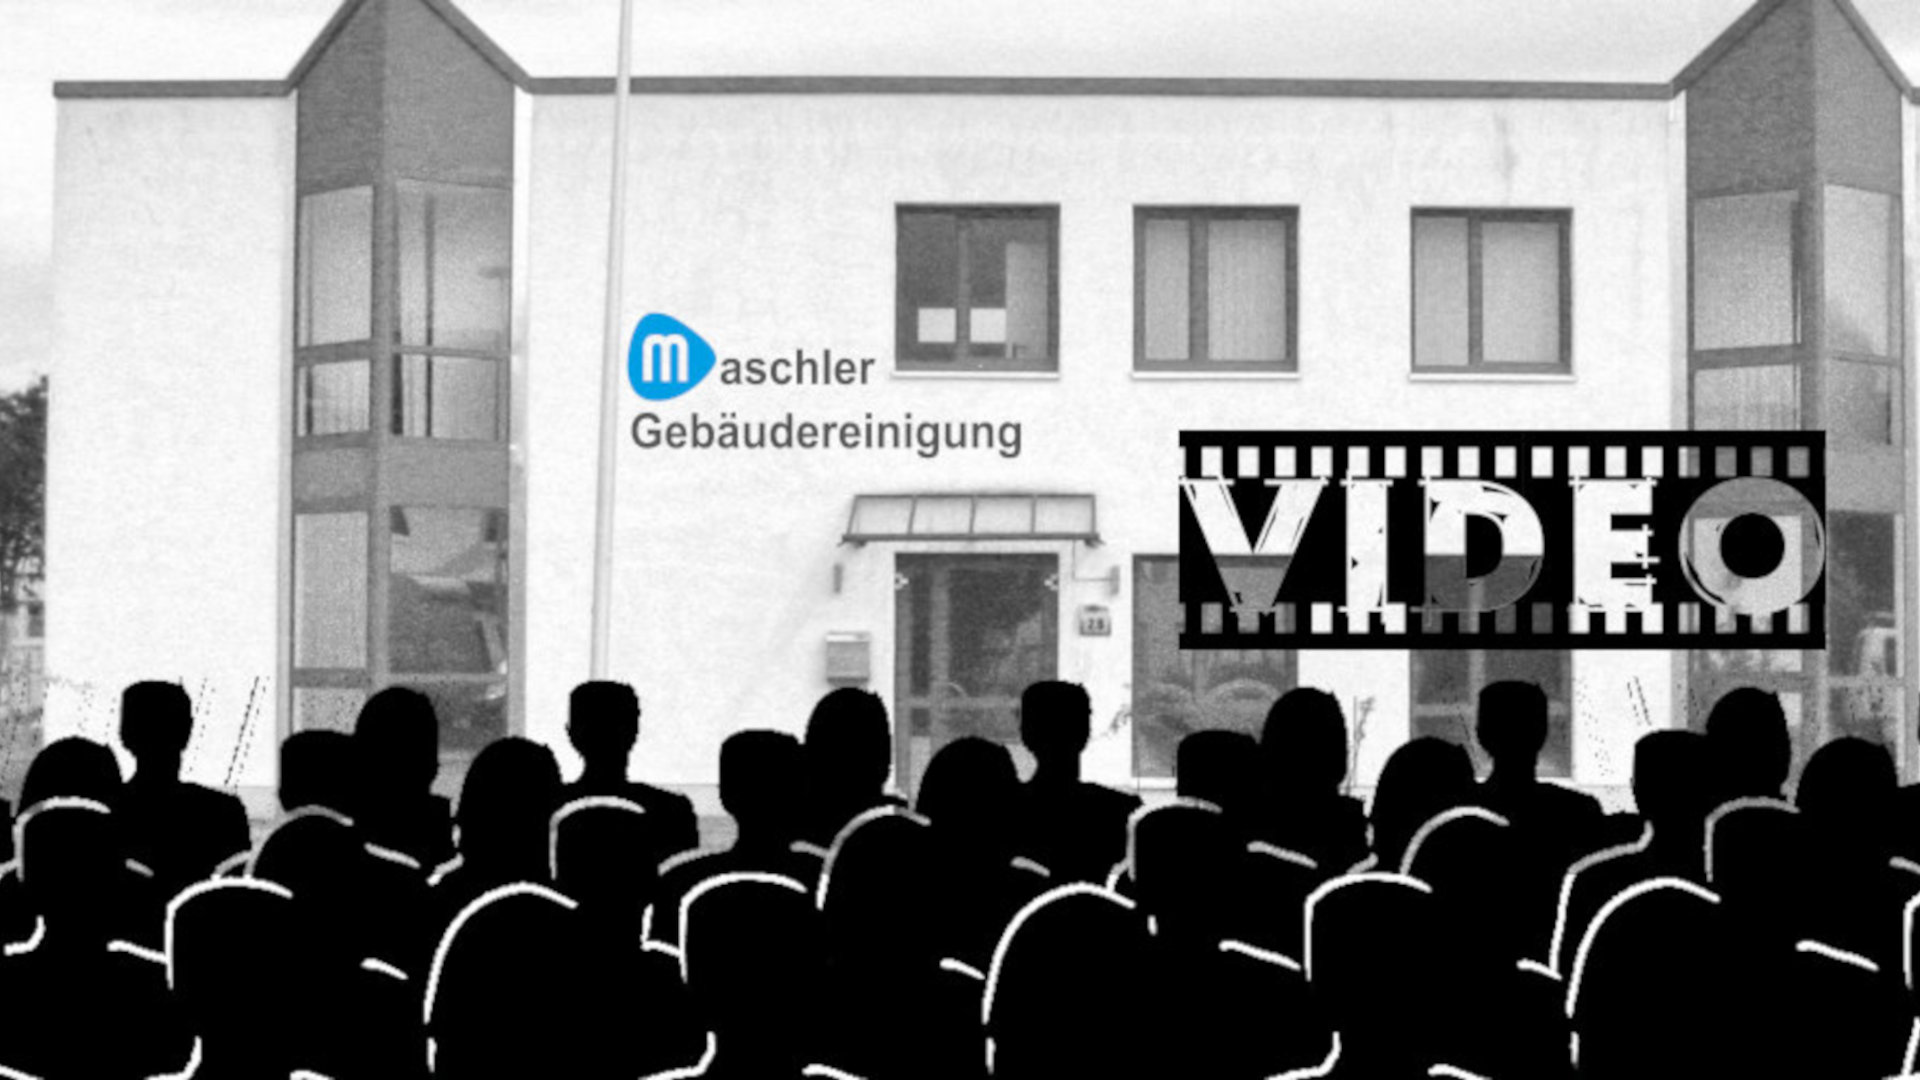 Video - Gebäudereinigung Maschler GmbH Schwerin